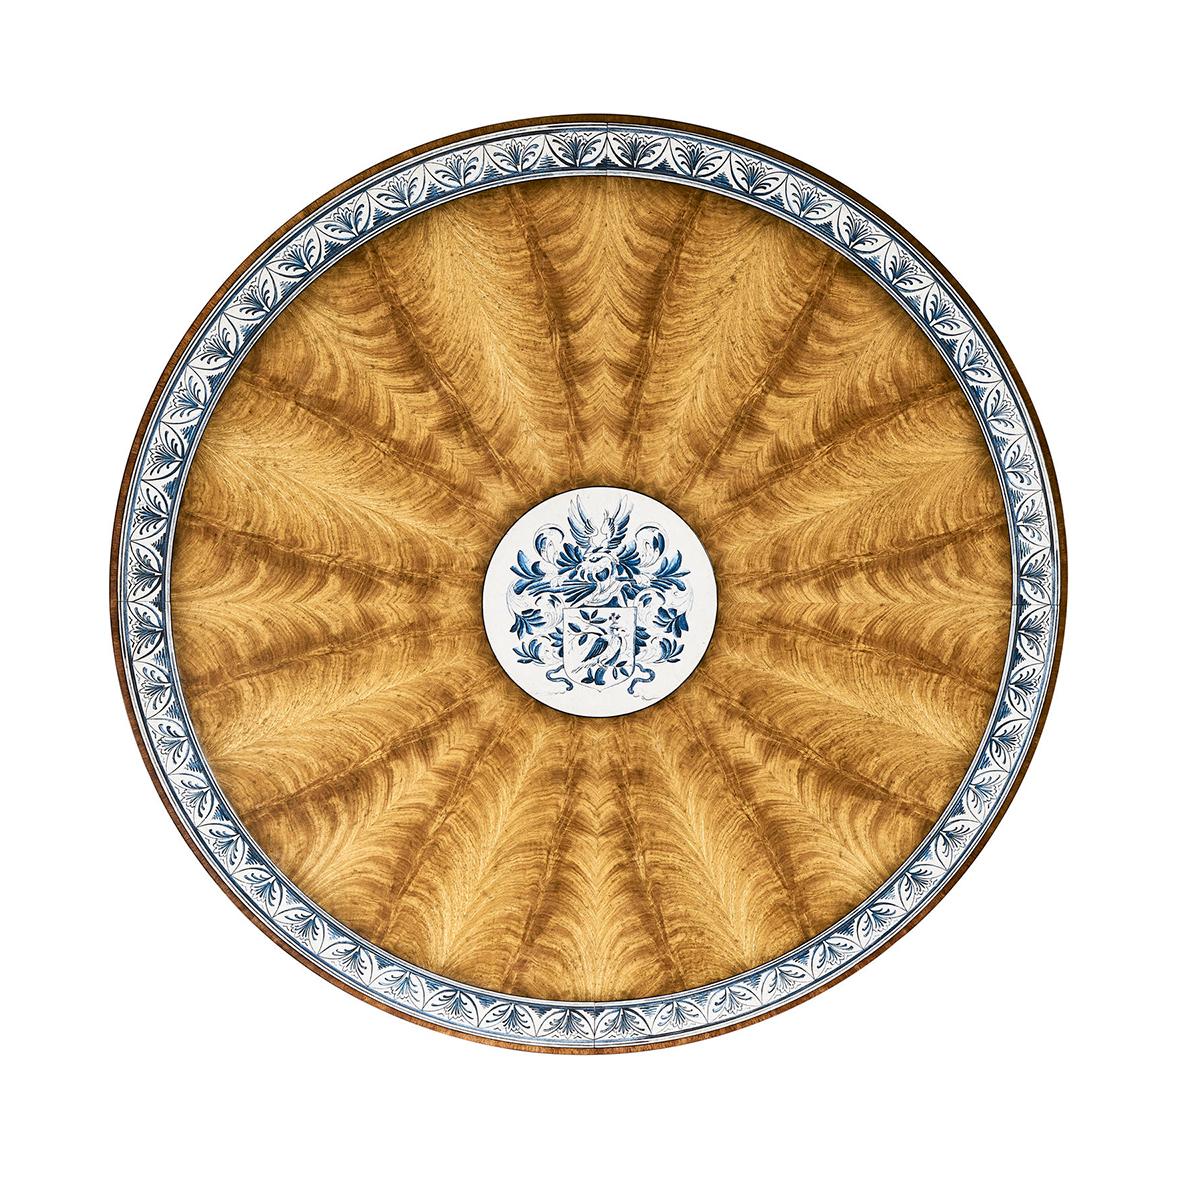 D'un diamètre de 58 pouces, il peut accueillir jusqu'à six personnes. Un design anglais classique du début du 19e siècle avec des bandes transversales peintes à la main dans un motif hollandais de Delft.

Le plateau de table rond et fixe met en